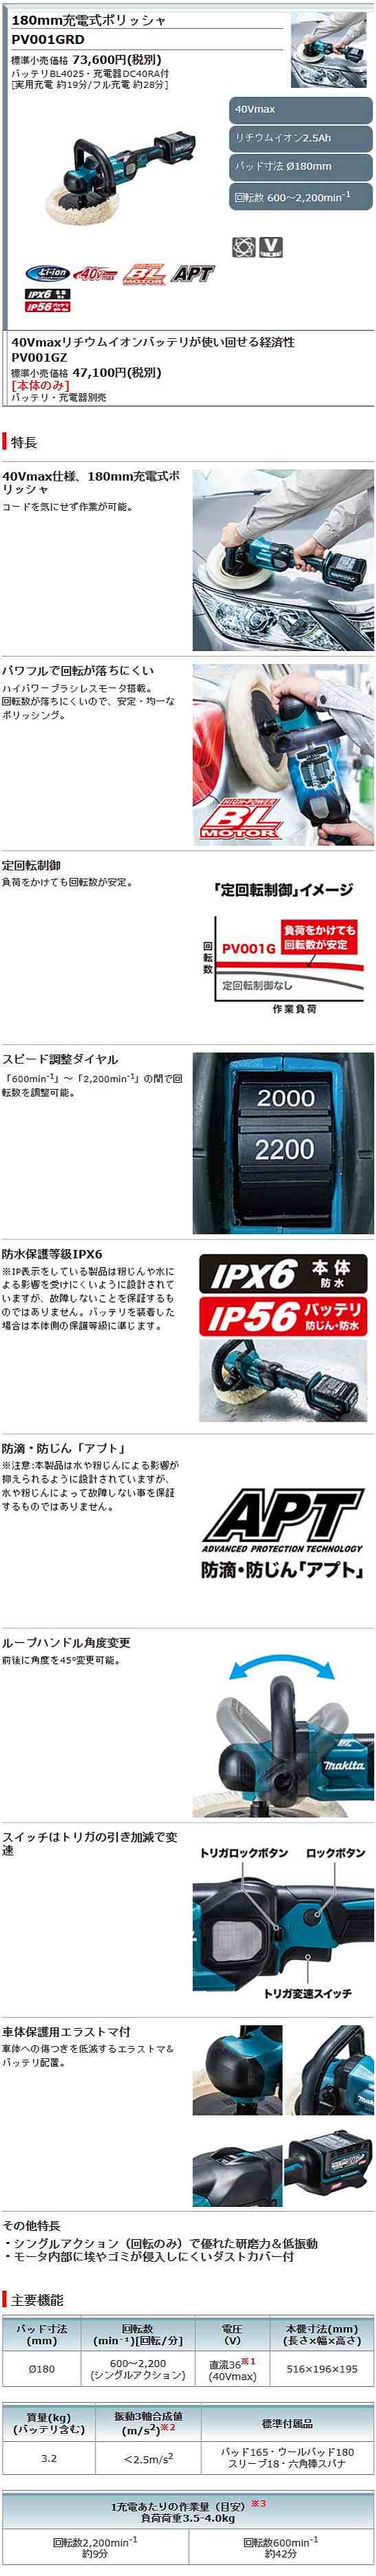 マキタ マキタ 充電式ポリッシャ PV001GZ 180mm 40Vmax